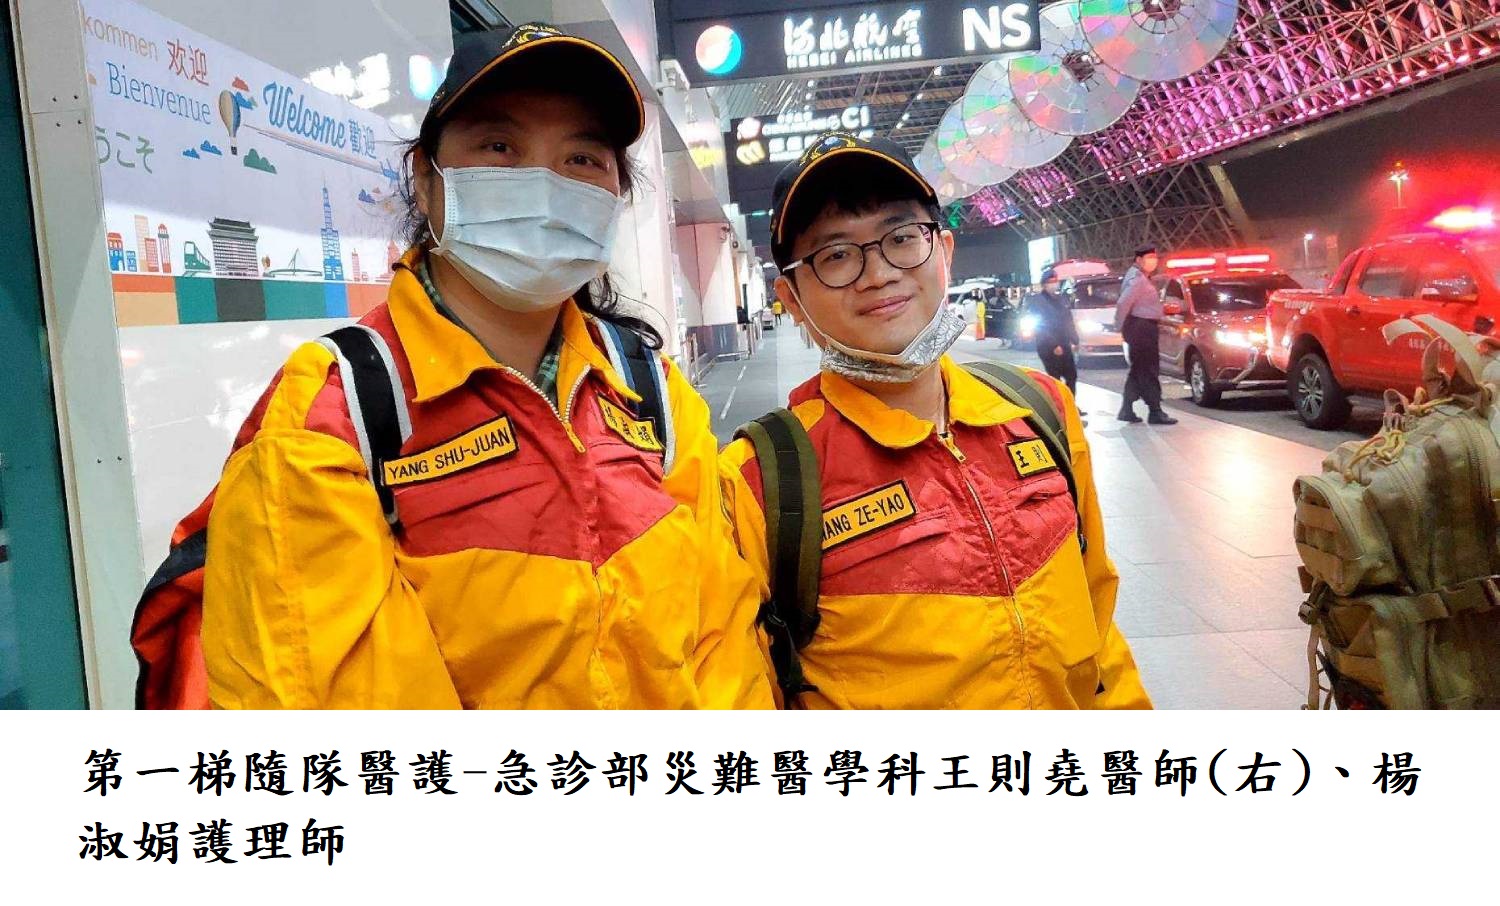 第一梯隨隊醫護-急診部災難醫學科王則堯醫師(右)、楊淑娟護理師